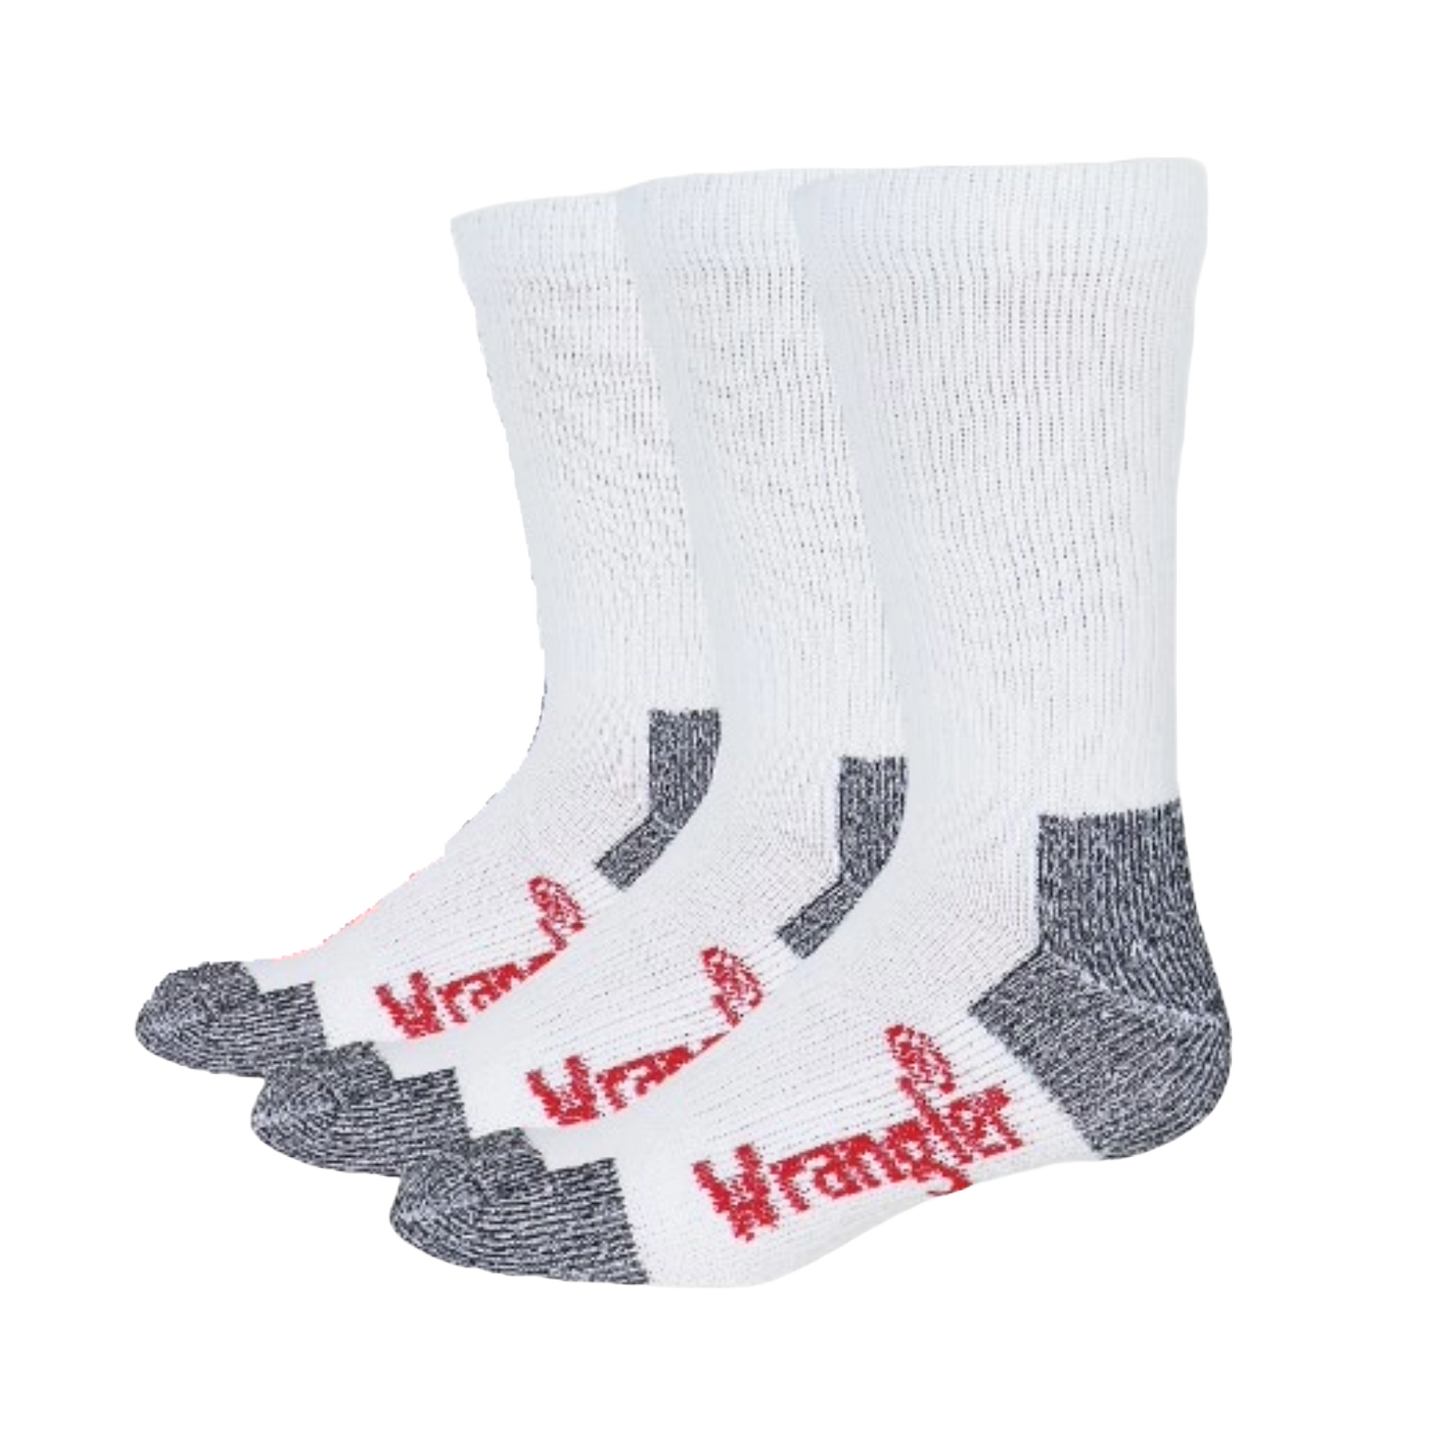 Wrangler® Riggs Men's White Ultra-Dri Work Boot Socks - 3 Pack - 3/72435-1000